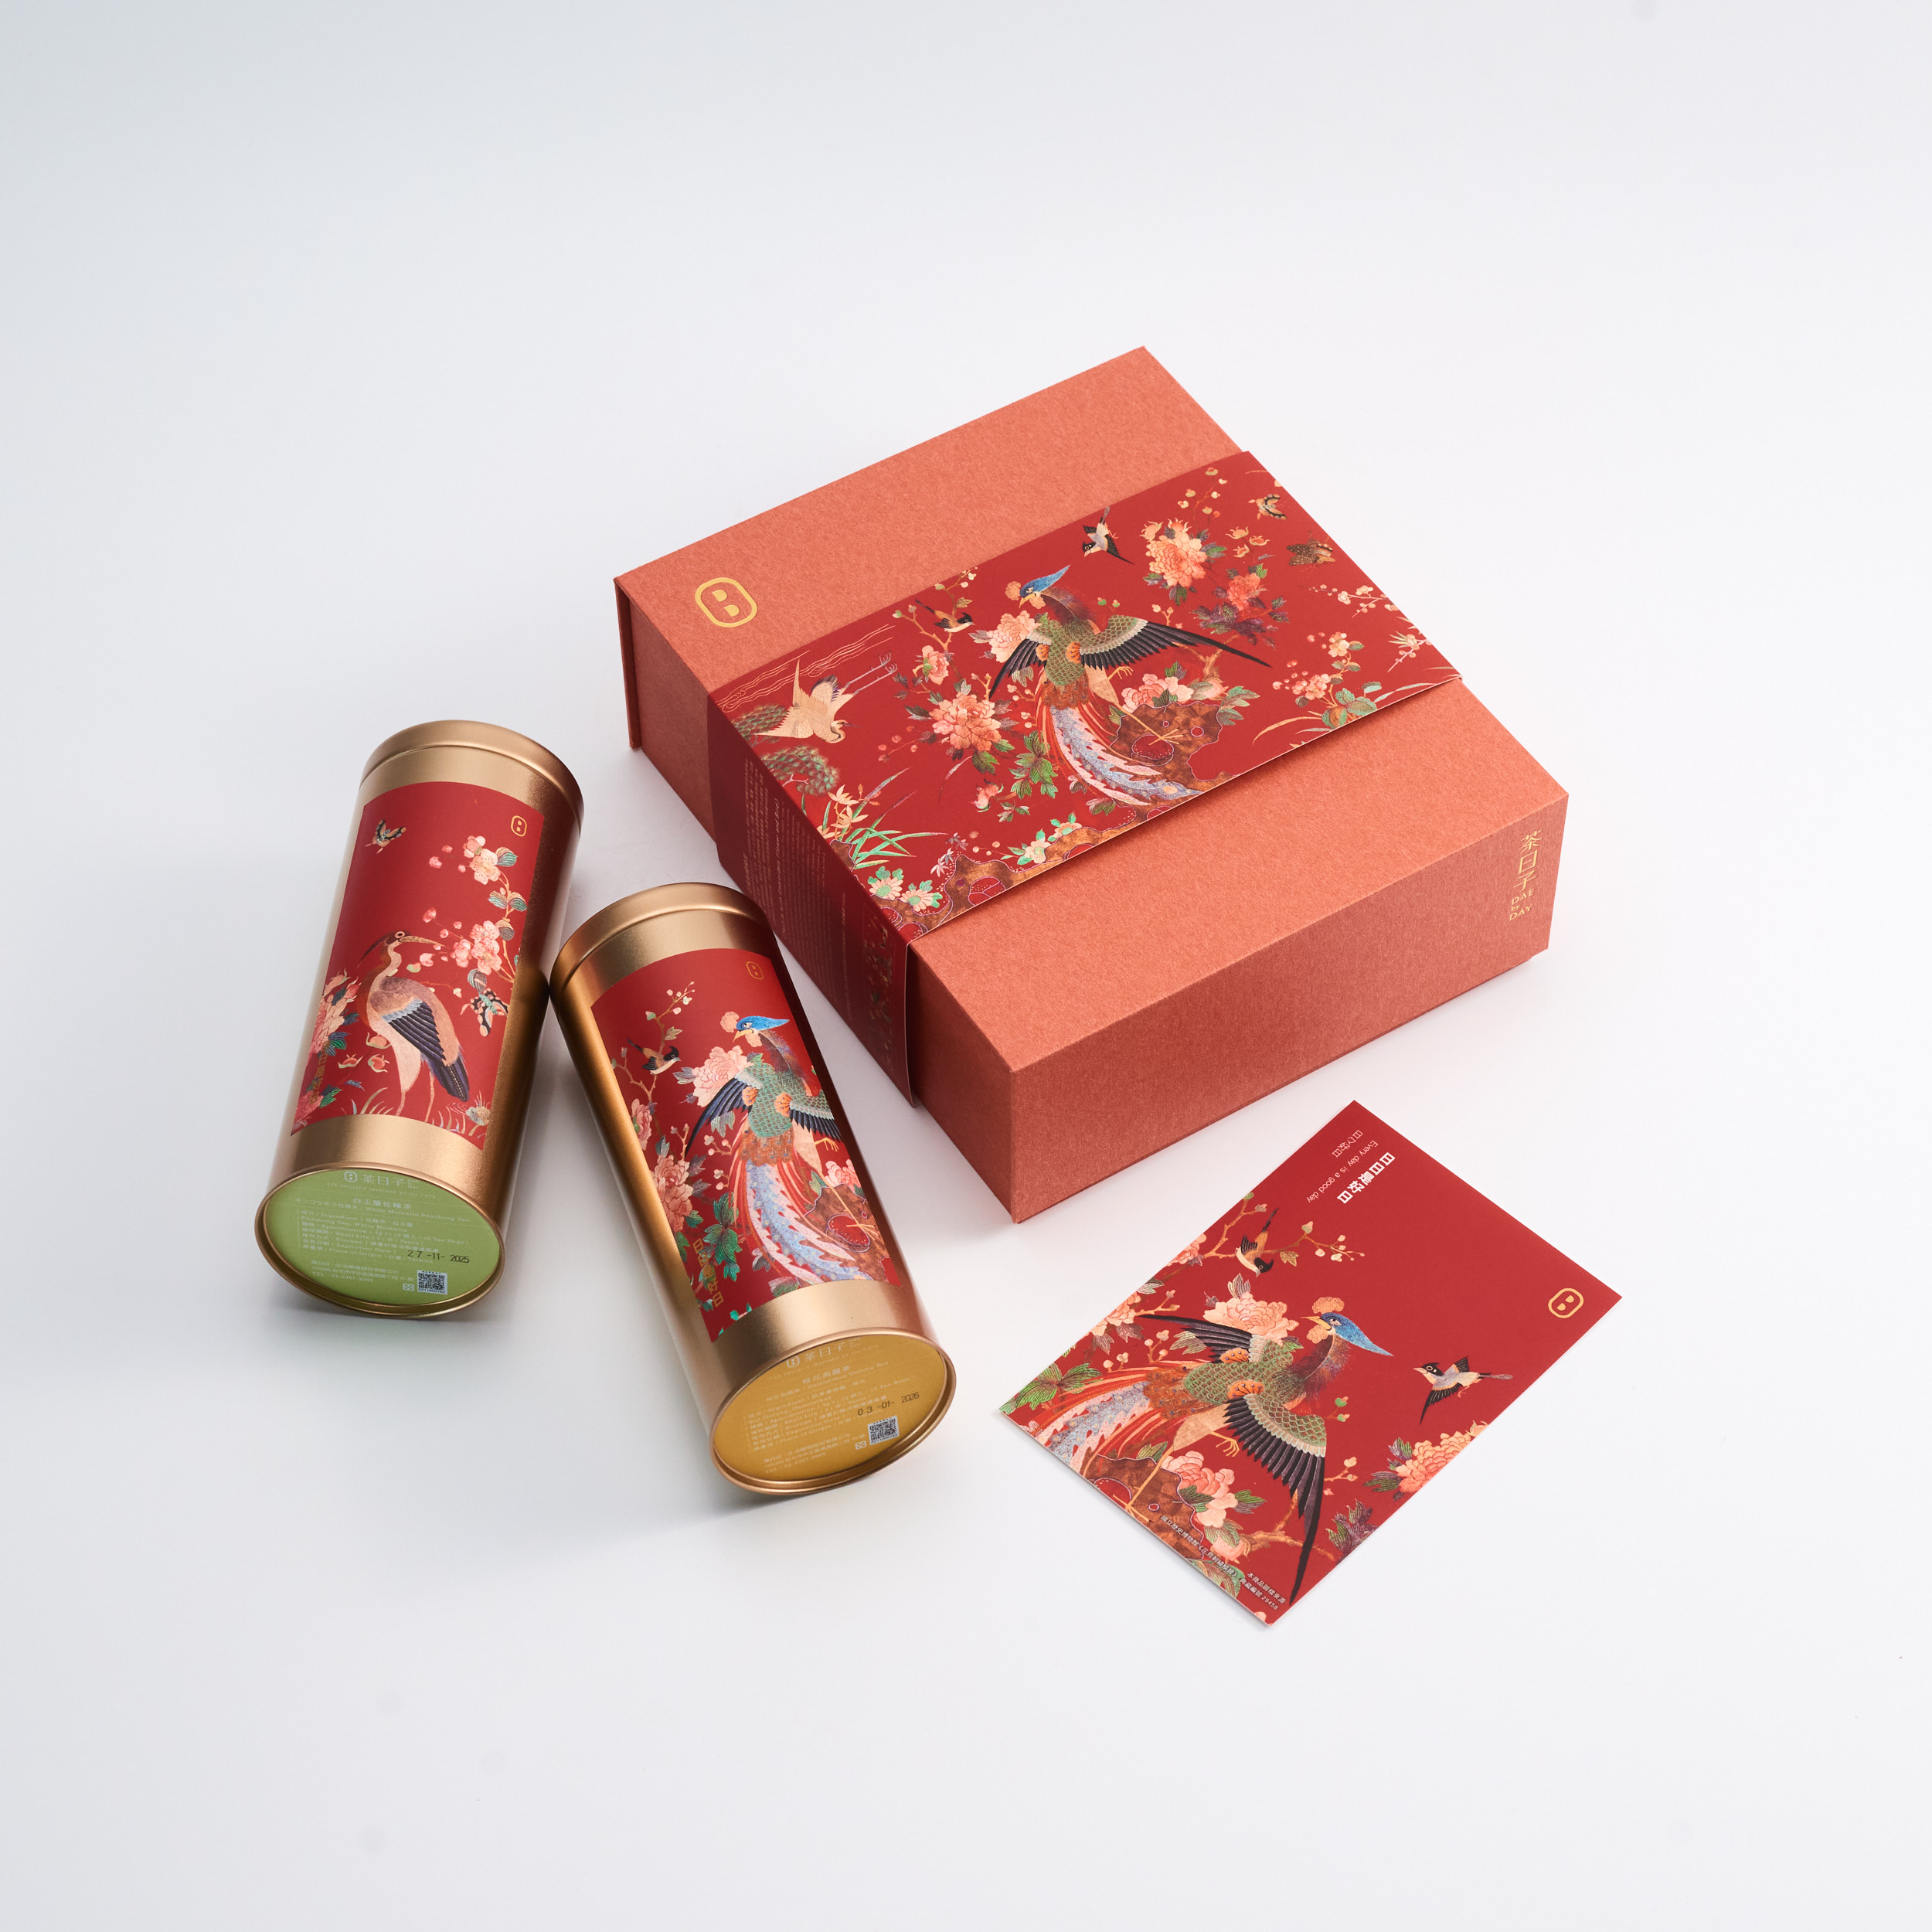 吉光祥羽 好日成雙禮盒 花鳥刺繡橫批 Good Luck Tea Gift Set 『Ching Dynasty, Lateral Curtain Embroidered with Flowers and Birds』